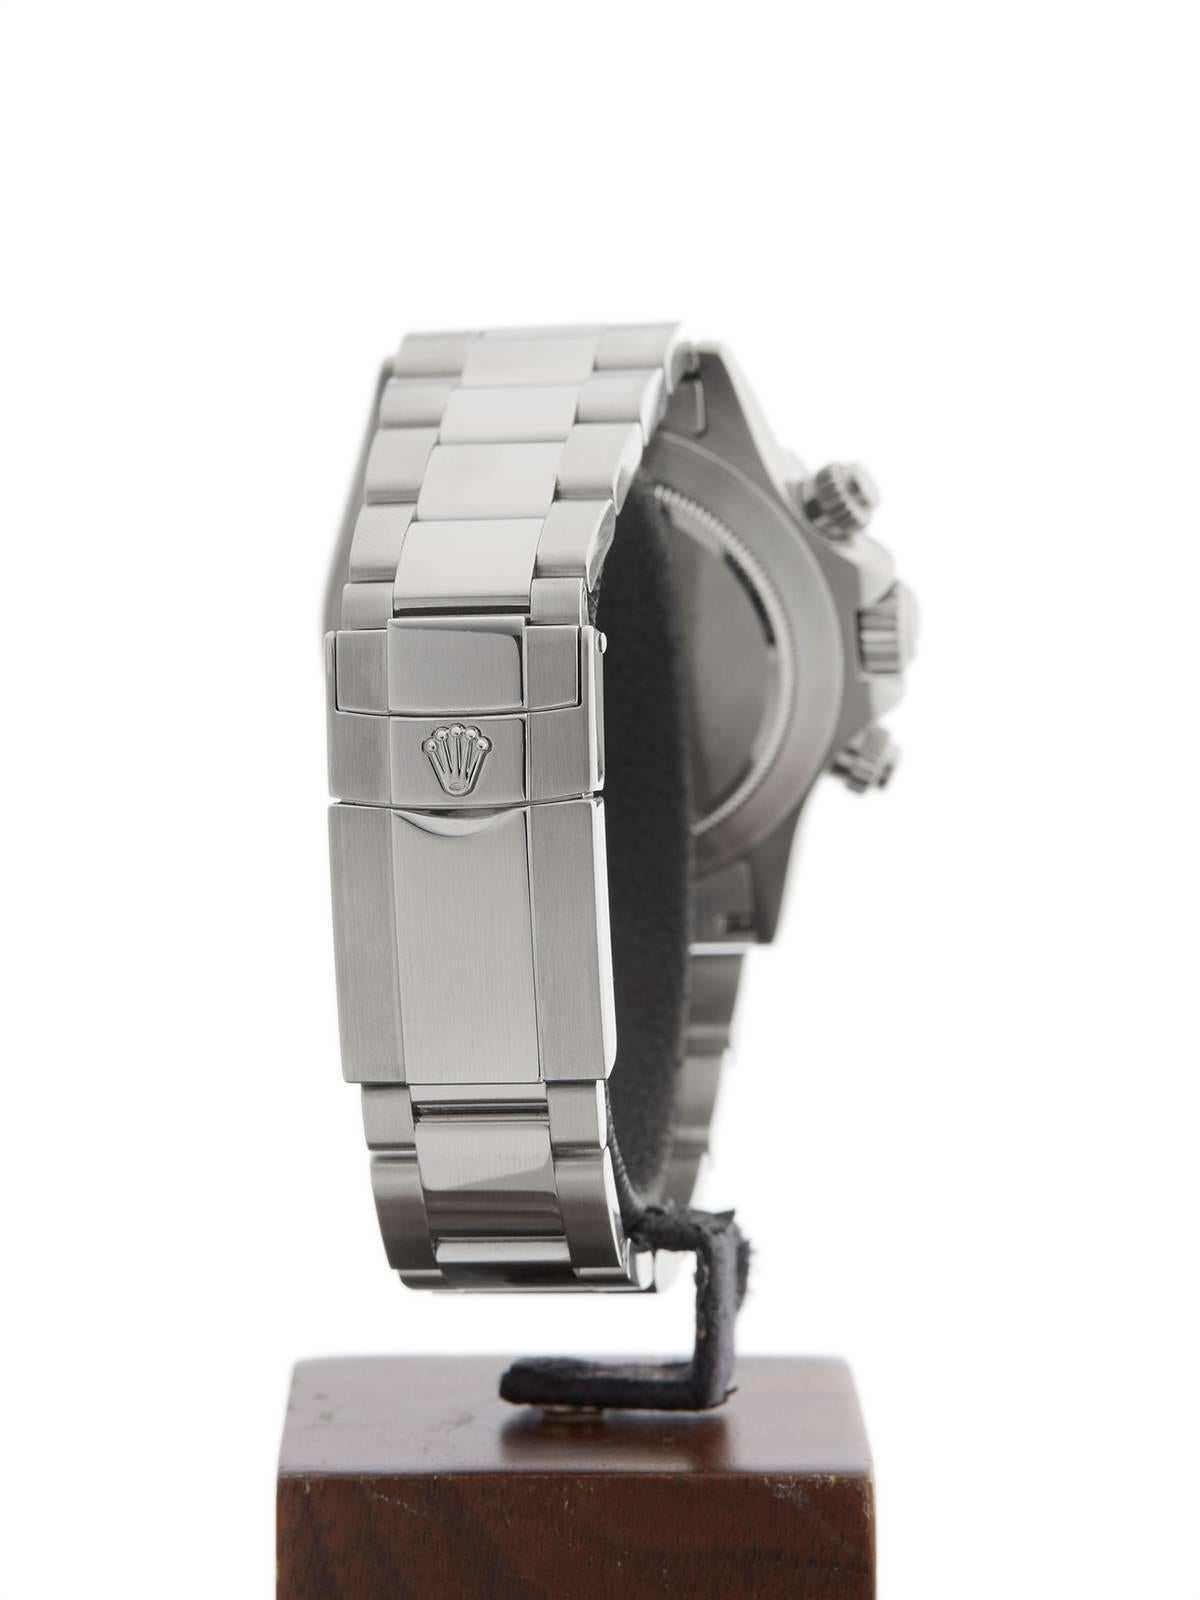 Rolex Stainless Steel Daytona Automatic Wristwatch Model 116520 3